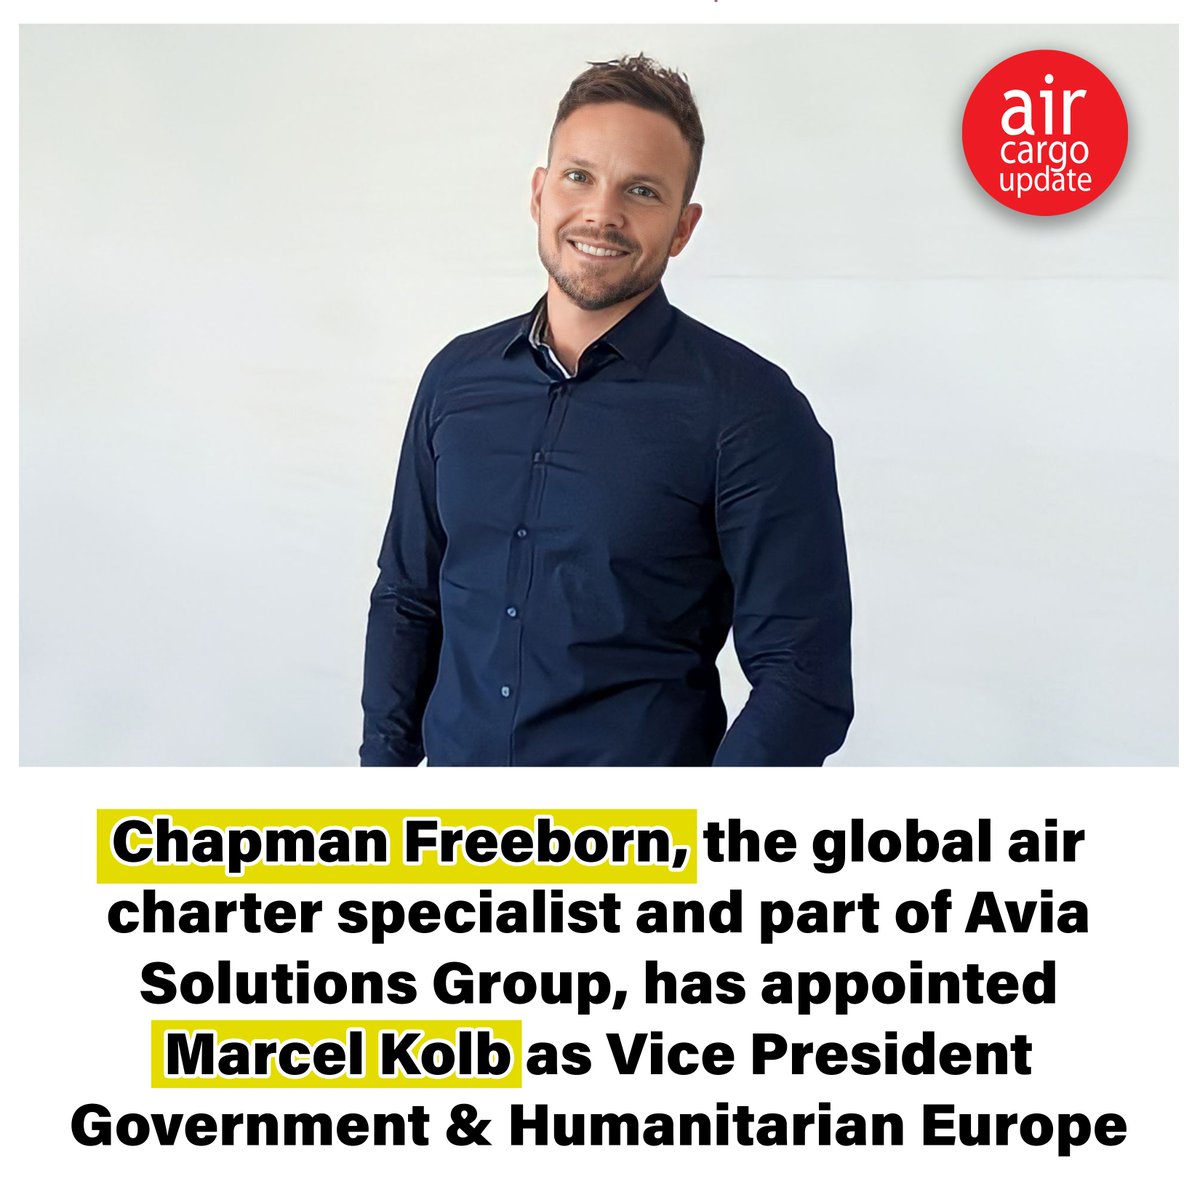 𝐂𝐡𝐚𝐩𝐦𝐚𝐧 𝐅𝐫𝐞𝐞𝐛𝐨𝐫𝐧 𝐚𝐩𝐩𝐨𝐢𝐧𝐭𝐬 𝐌𝐚𝐫𝐜𝐞𝐥 𝐊𝐨𝐥𝐛 𝐚𝐬 𝐕𝐢𝐜𝐞 𝐏𝐫𝐞𝐬𝐢𝐝𝐞𝐧𝐭 𝐆𝐨𝐯𝐞𝐫𝐧𝐦𝐞𝐧𝐭 & 𝐇𝐮𝐦𝐚𝐧𝐢𝐭𝐚𝐫𝐢𝐚𝐧 𝐄𝐮𝐫𝐨𝐩𝐞: Read More: aircargoupdate.com/chapman-fr... #chapmanfreeborn #charter #aircargologistics #aircargoupdate